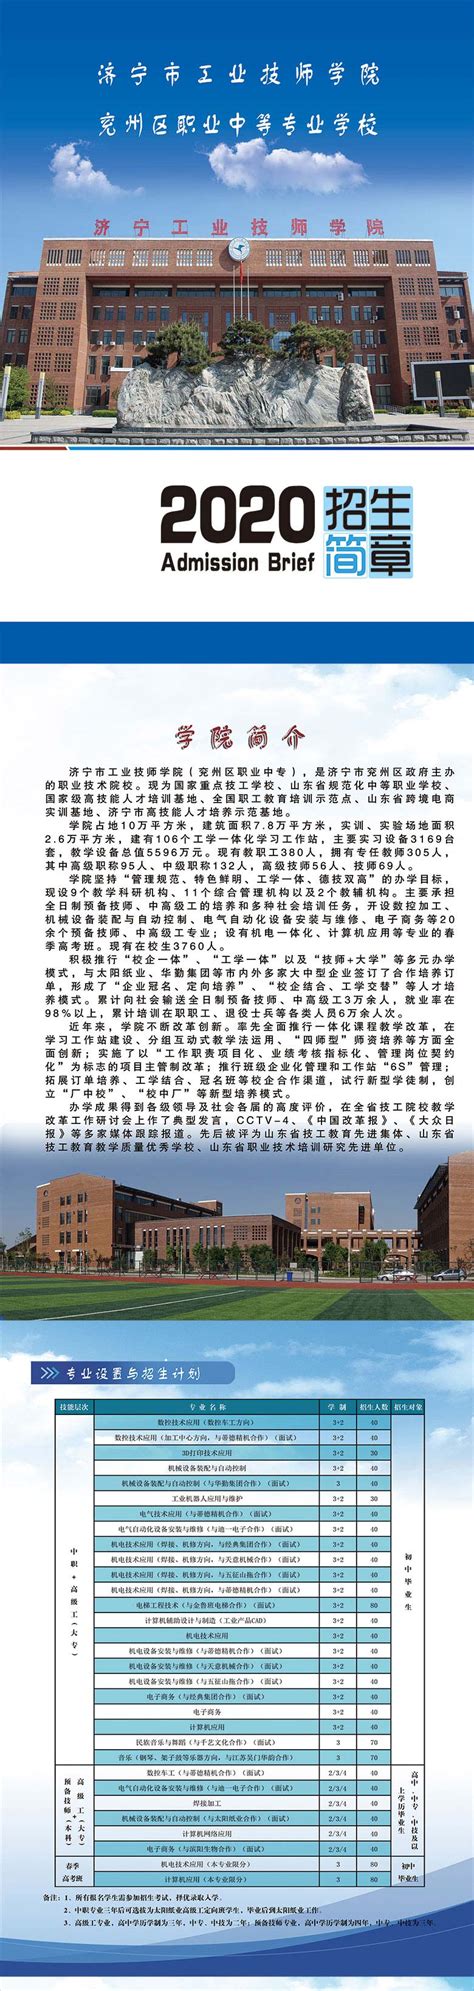 济宁工业技师学院2020年招生简章 - 济宁市工业技师学院